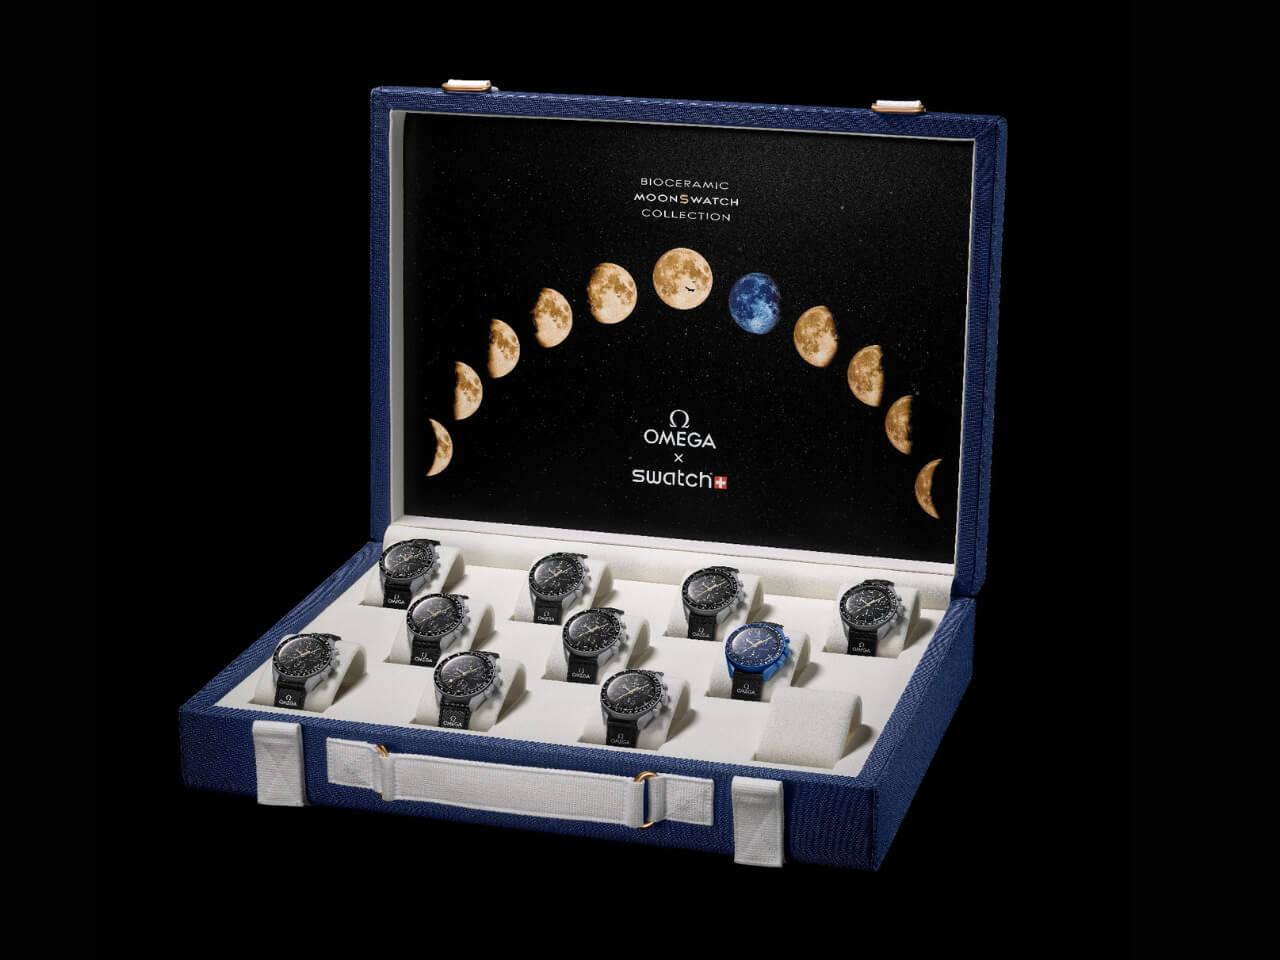 毎月満月に発売したムーンシャインゴールドコレクションは、史上初の月面着陸に成功したアポロ11号にちなんだ、全11種類